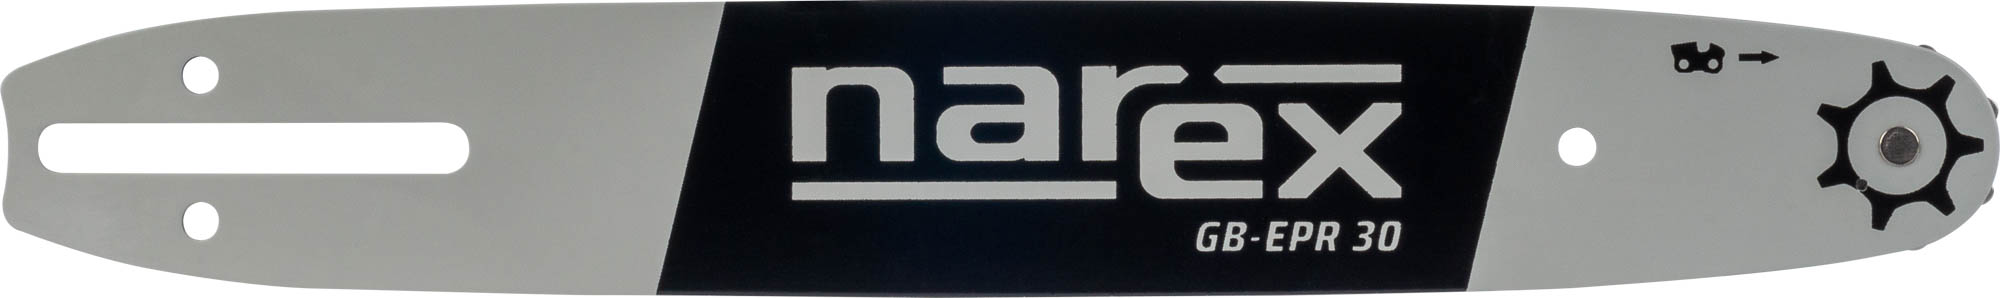 NAREX GB-EPR 30 vodicí lišta